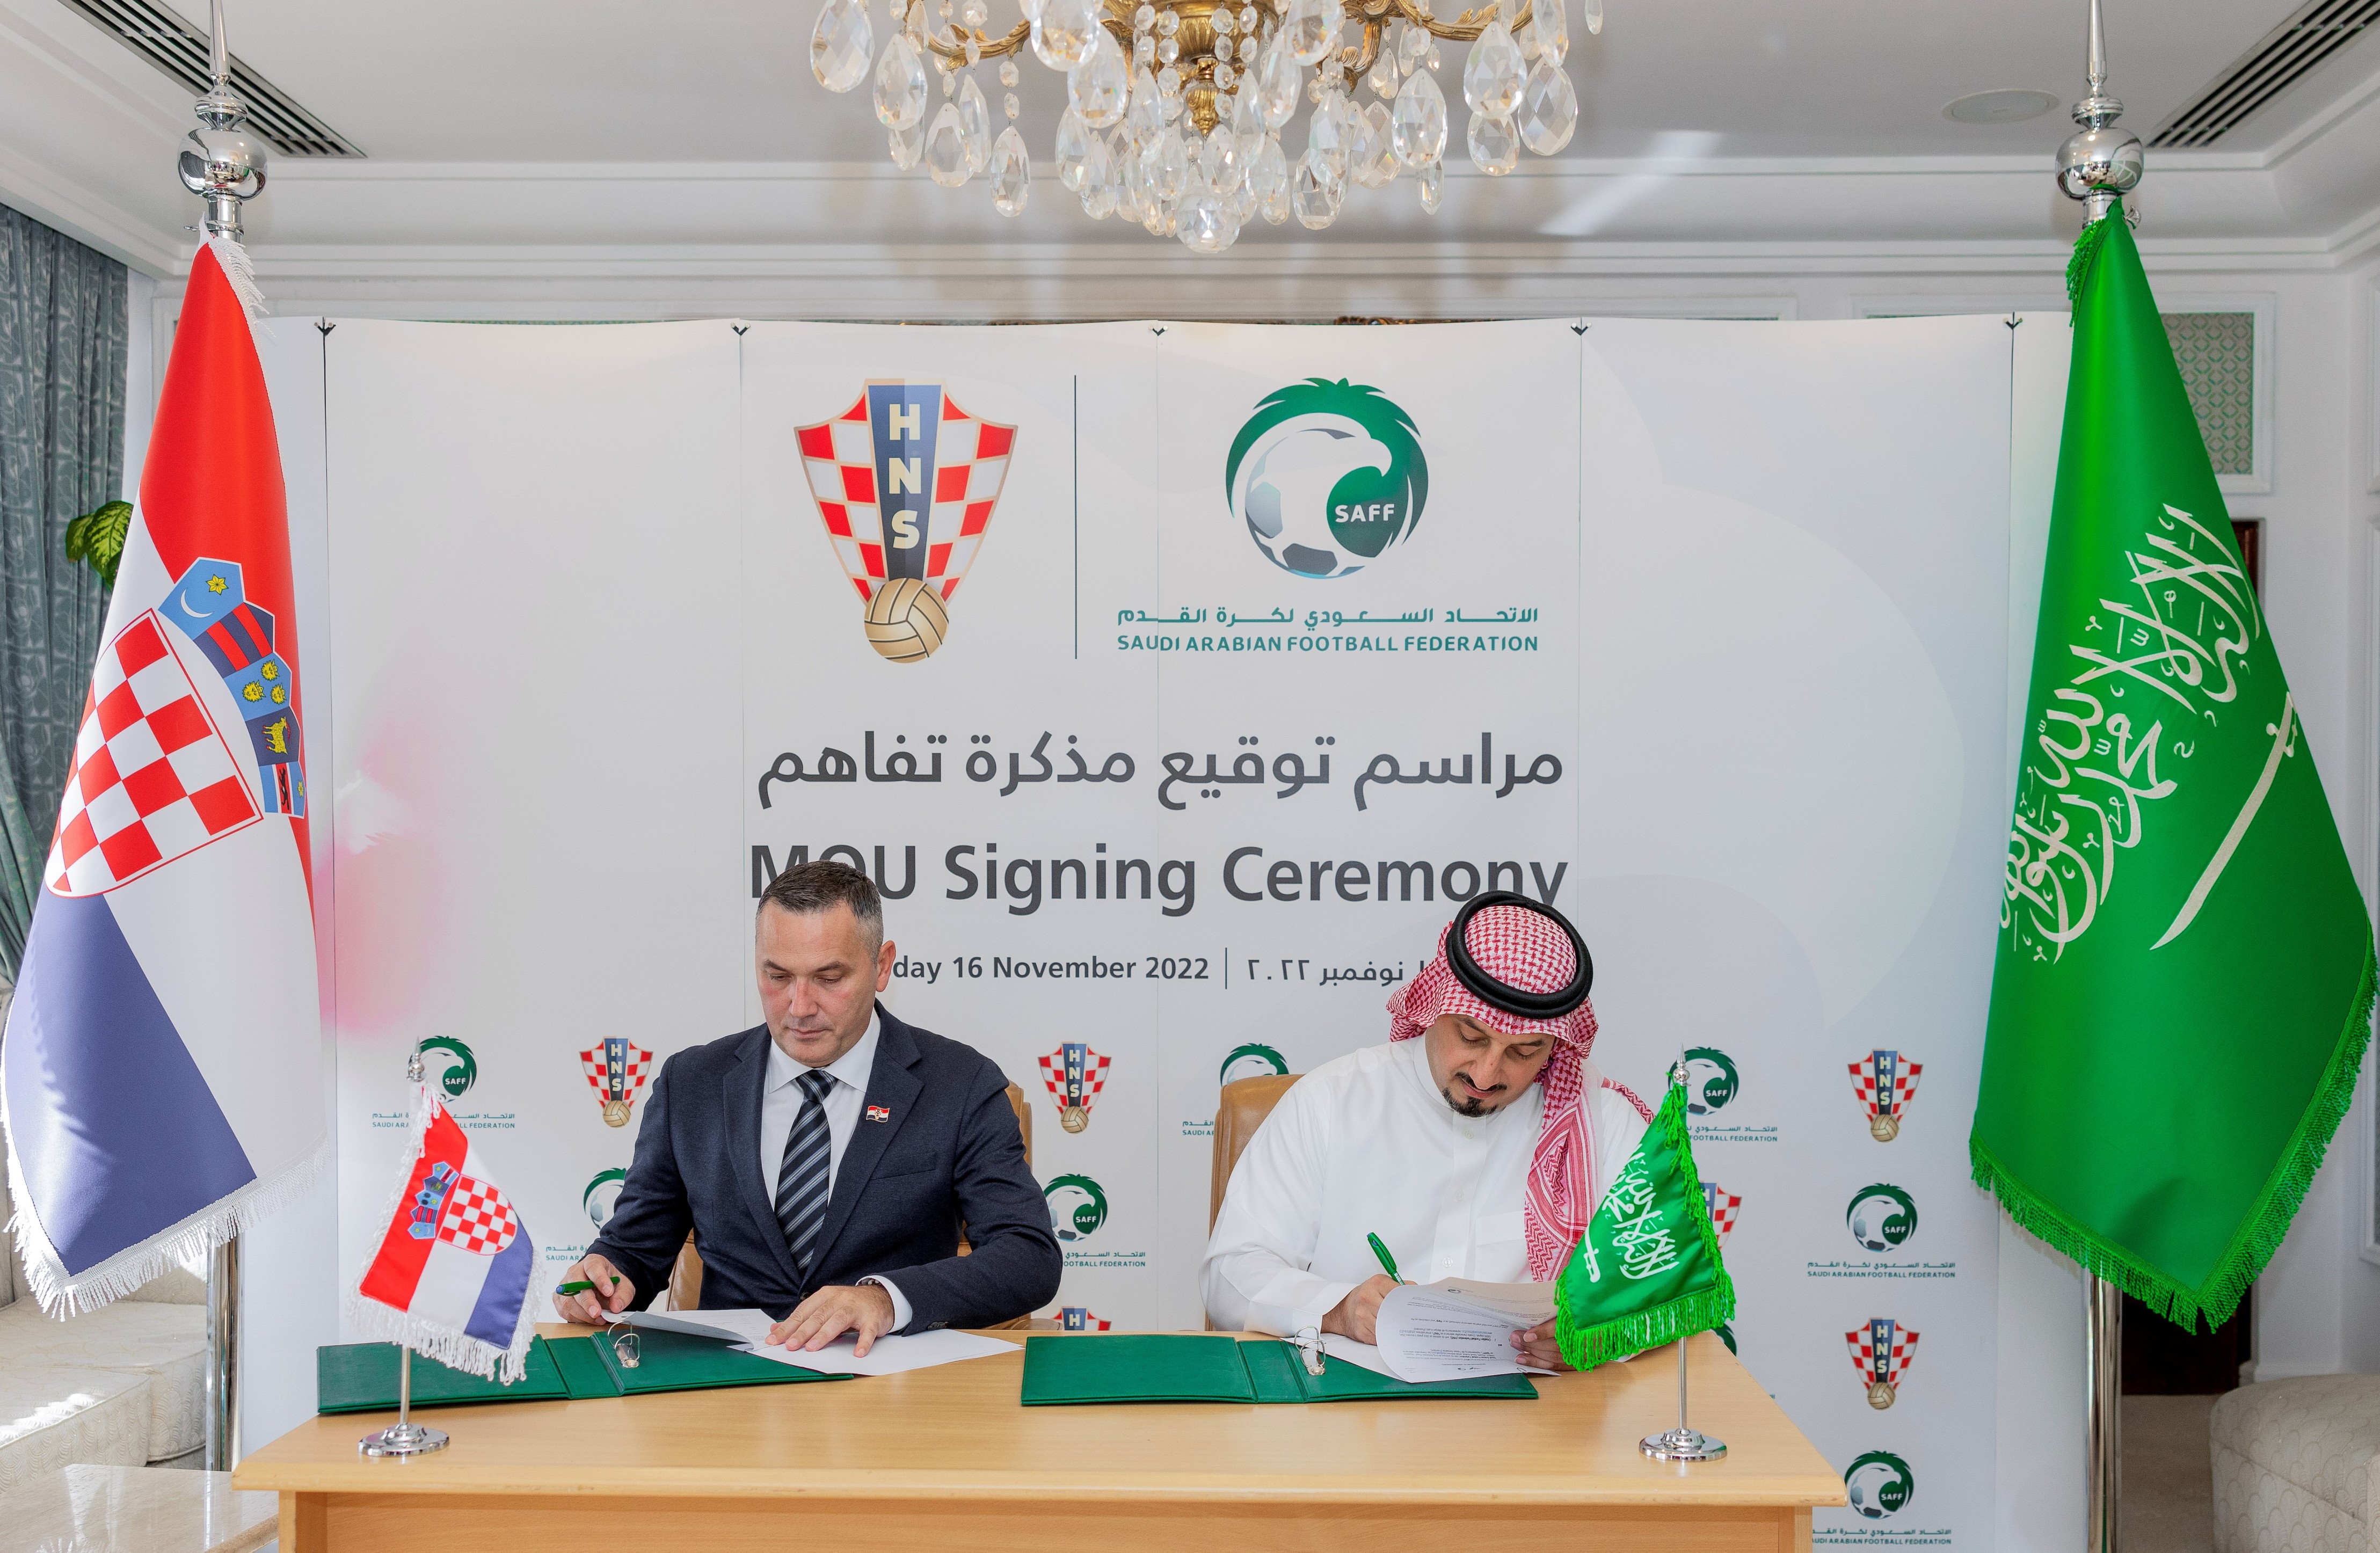 Саудовская Аравия и Хорватия воспользовались дружбой на чемпионате мира, чтобы подписать меморандум о взаимопонимании на будущее.